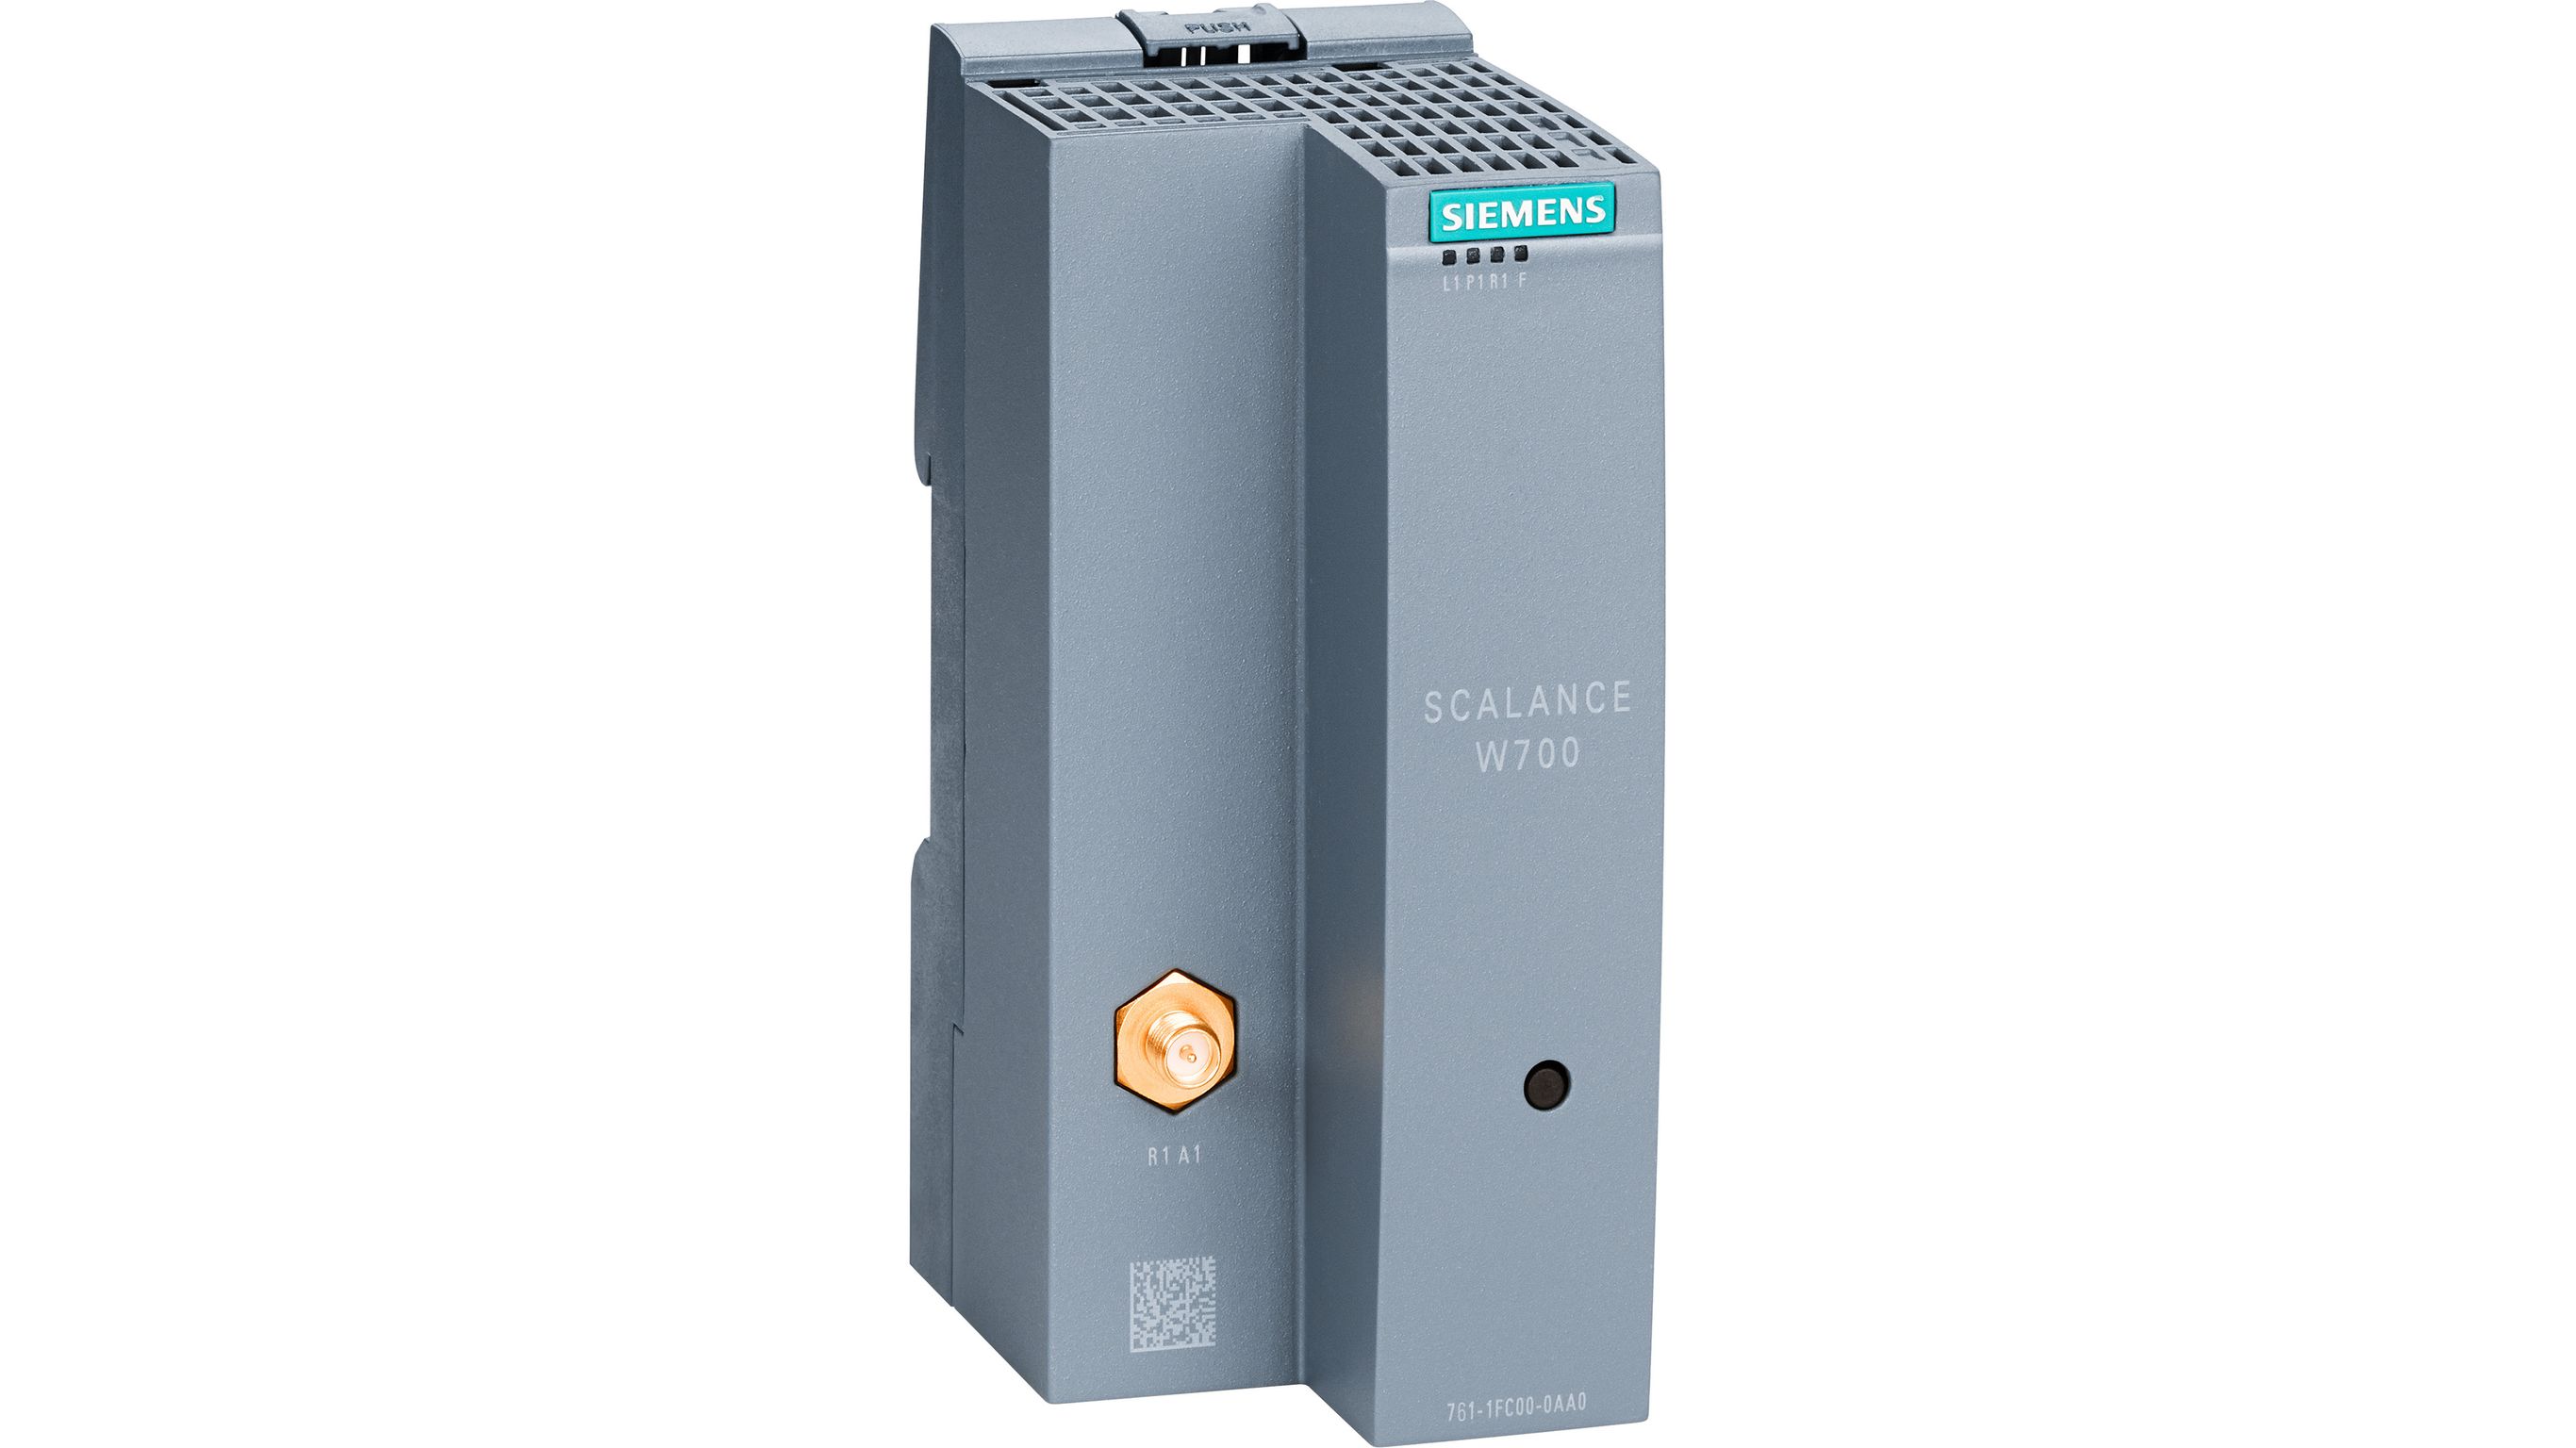 SCALANCE W760 / SCALANCE W720 - Siemens Japan